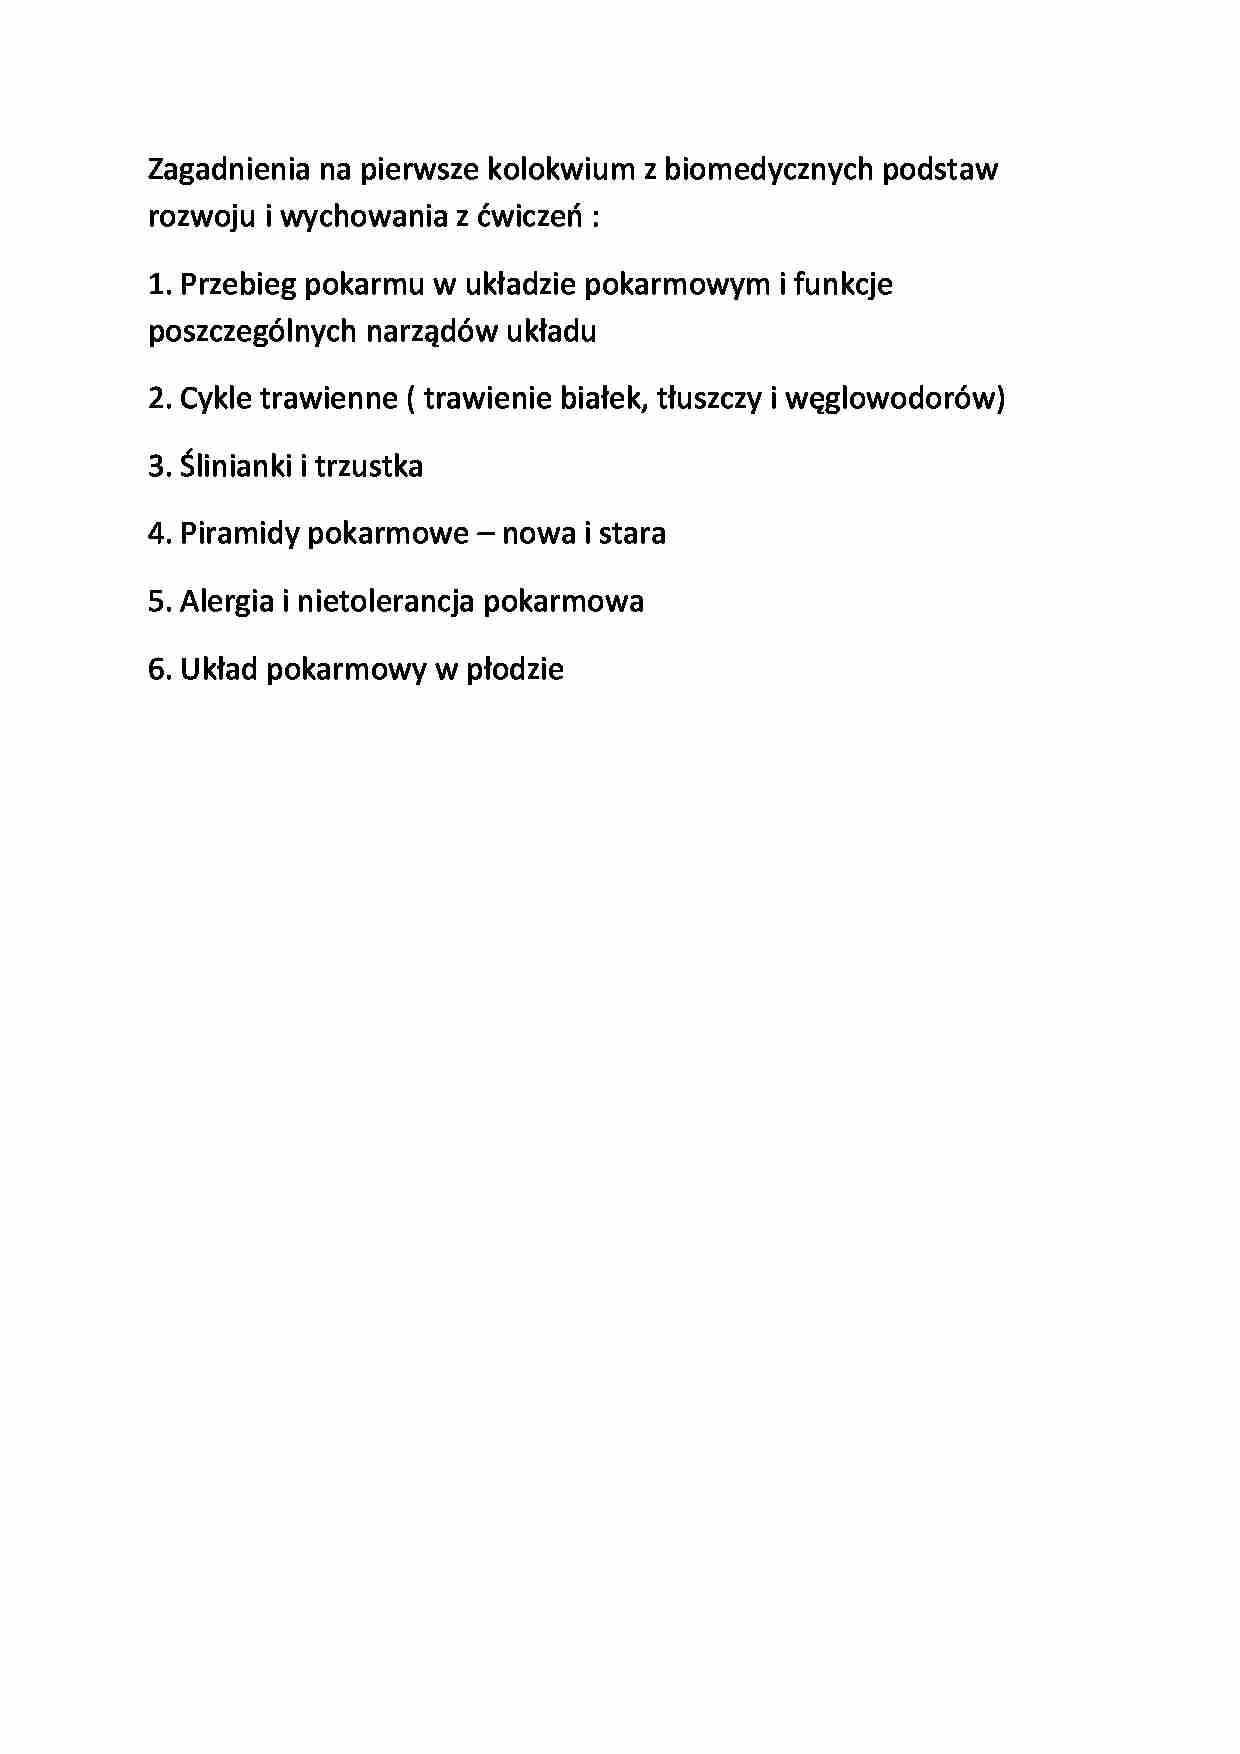 Biomedyczne podstawy rozwoju - zagadnienia egzaminacyjne - strona 1